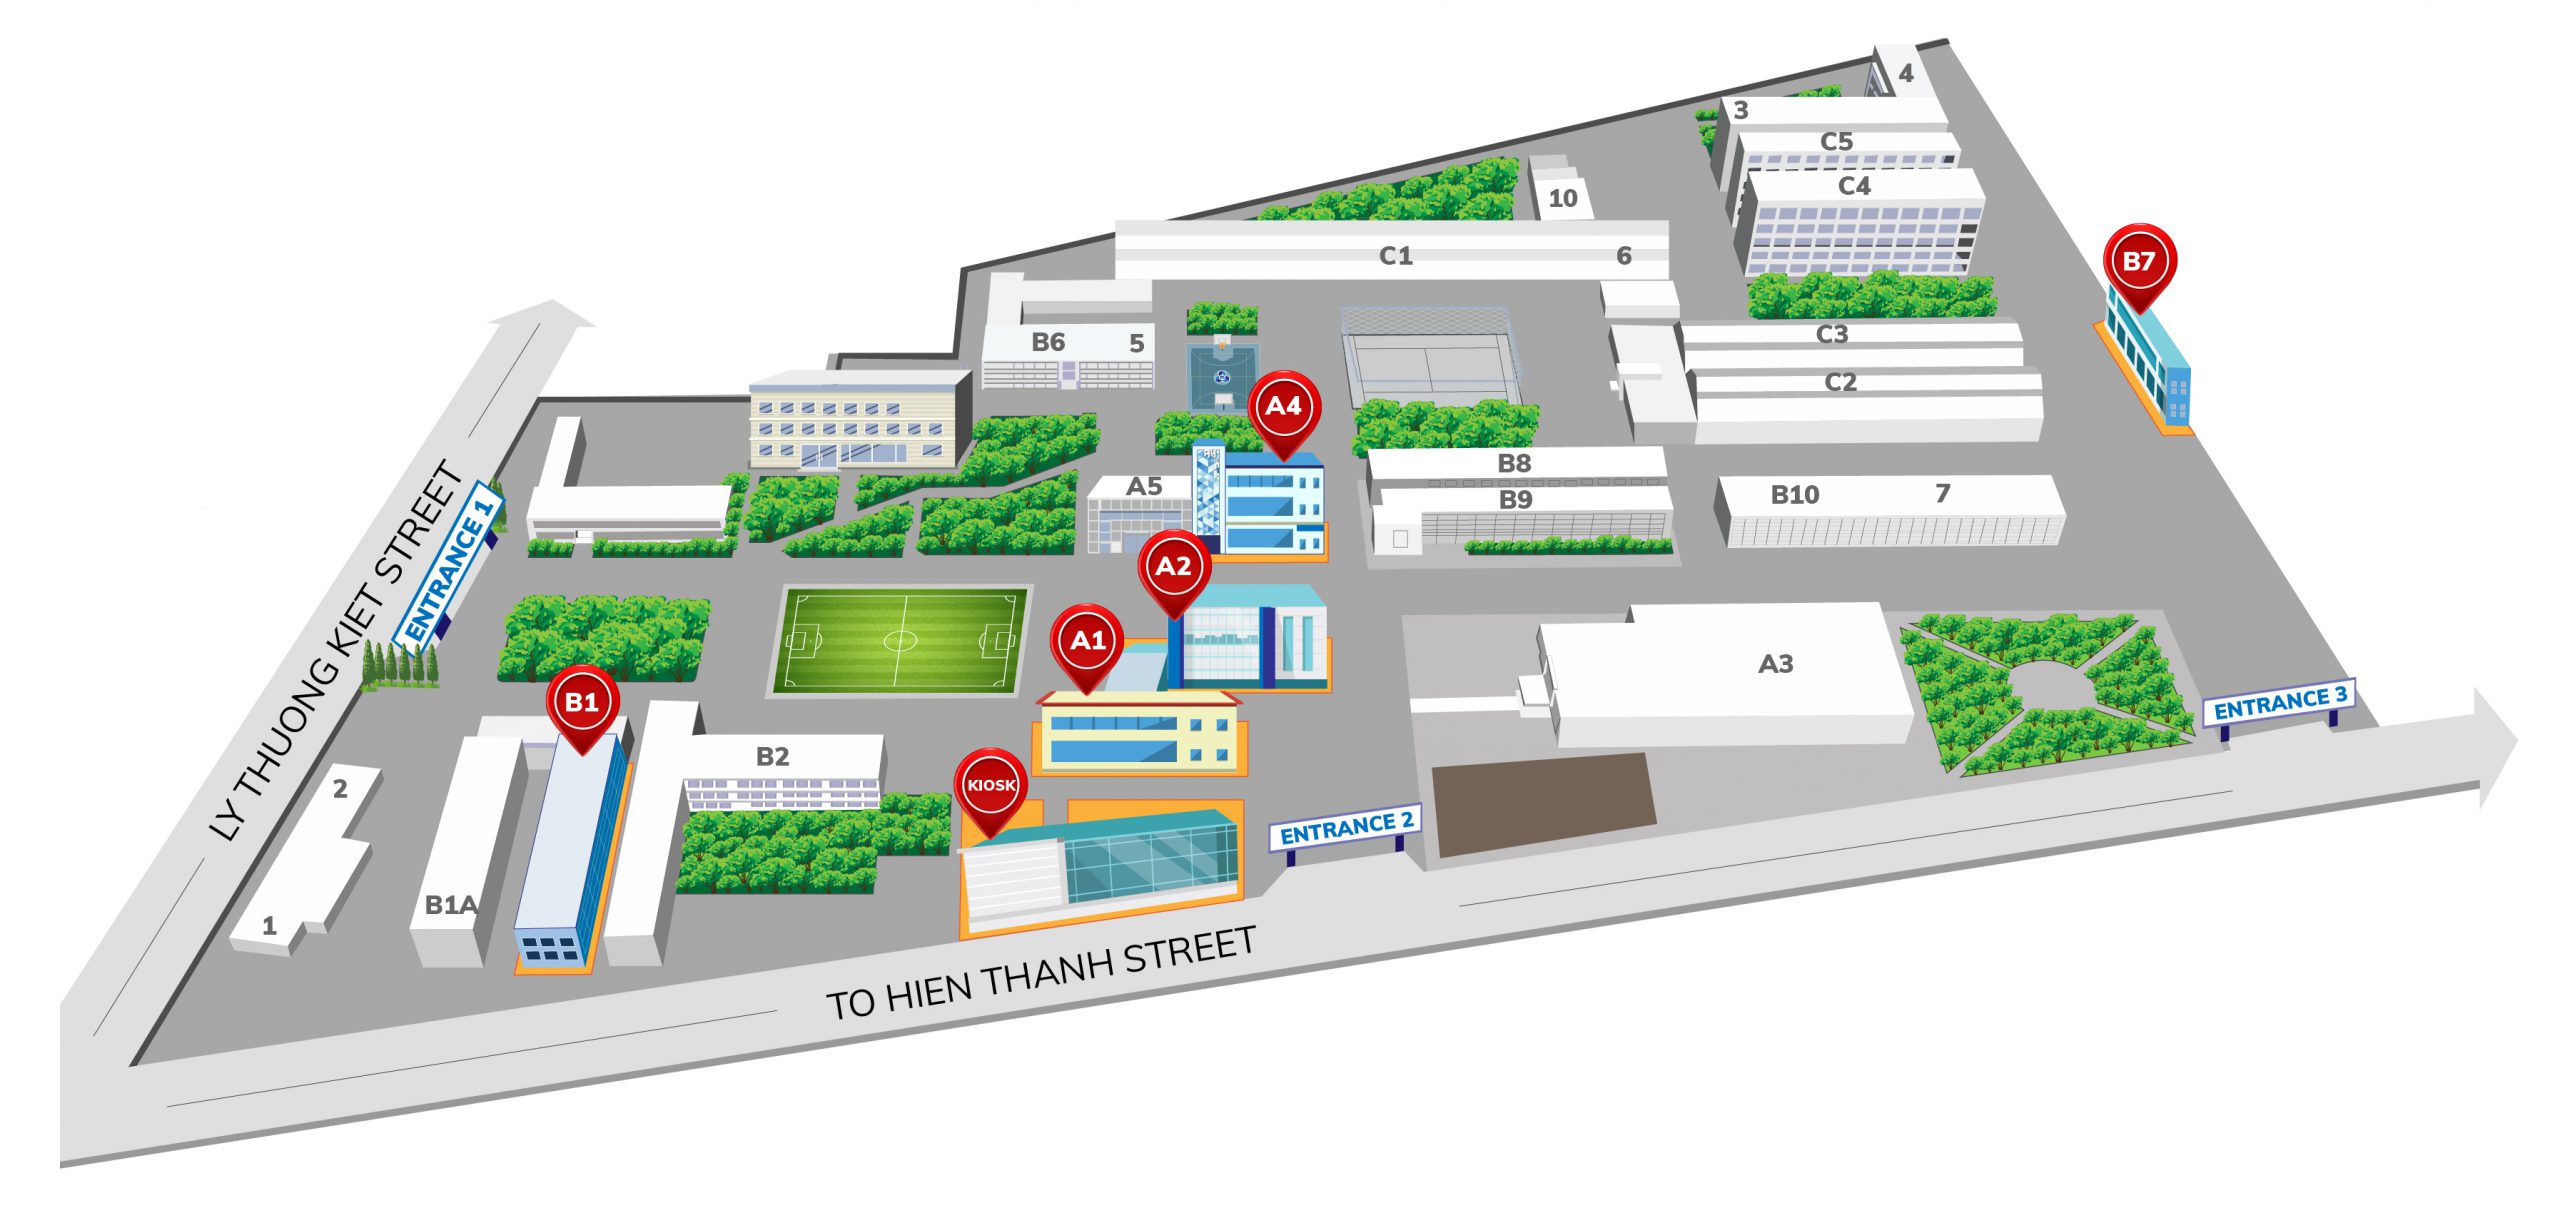 OISP-Toolkit Bản đồ 3D TPHCM là công cụ hữu ích cho những ai muốn tìm hiểu và khai thác tối đa tiềm năng của thành phố sôi động này. Với khả năng phân tích dữ liệu chuyên sâu, bạn sẽ có cơ hội trích xuất ra những thông tin quan trọng và áp dụng chúng vào các lĩnh vực như du lịch, bất động sản, hay kinh doanh.